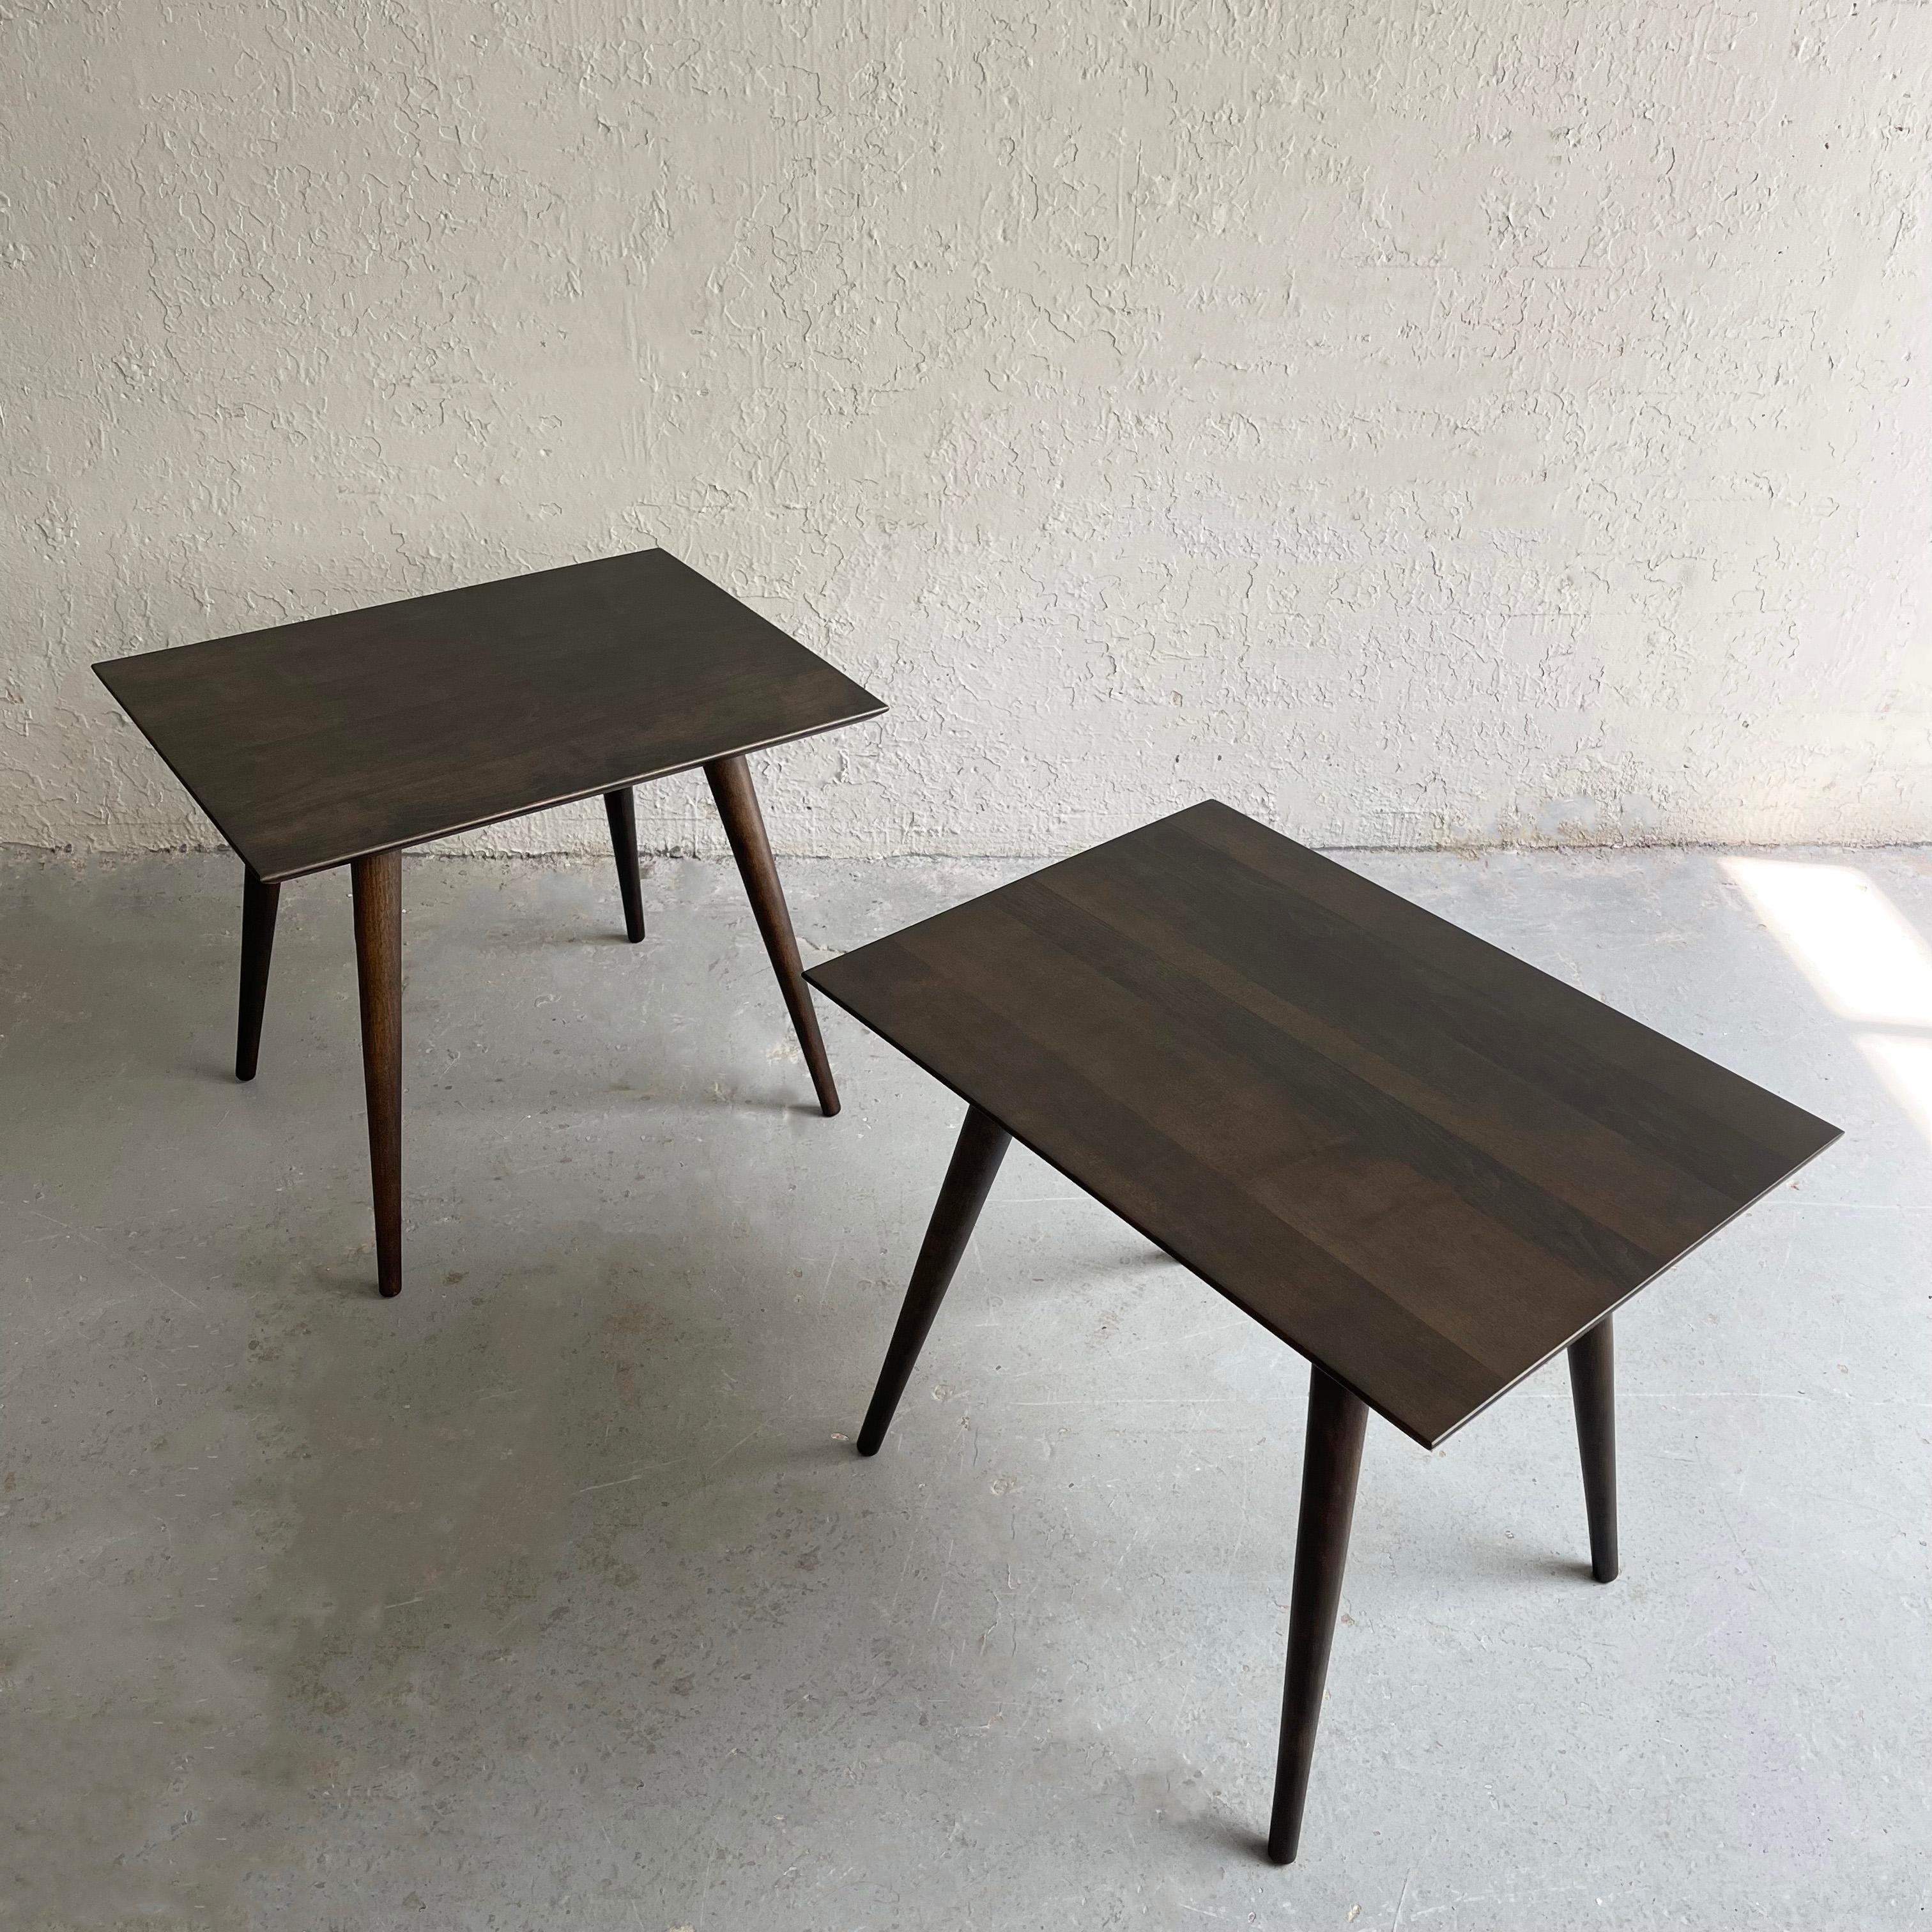 Zwei klassische Beistelltische aus Ahornholz aus der Mitte des Jahrhunderts von Paul McCobb für Planner Group, Winchendon, mit ebonisierter Oberfläche.